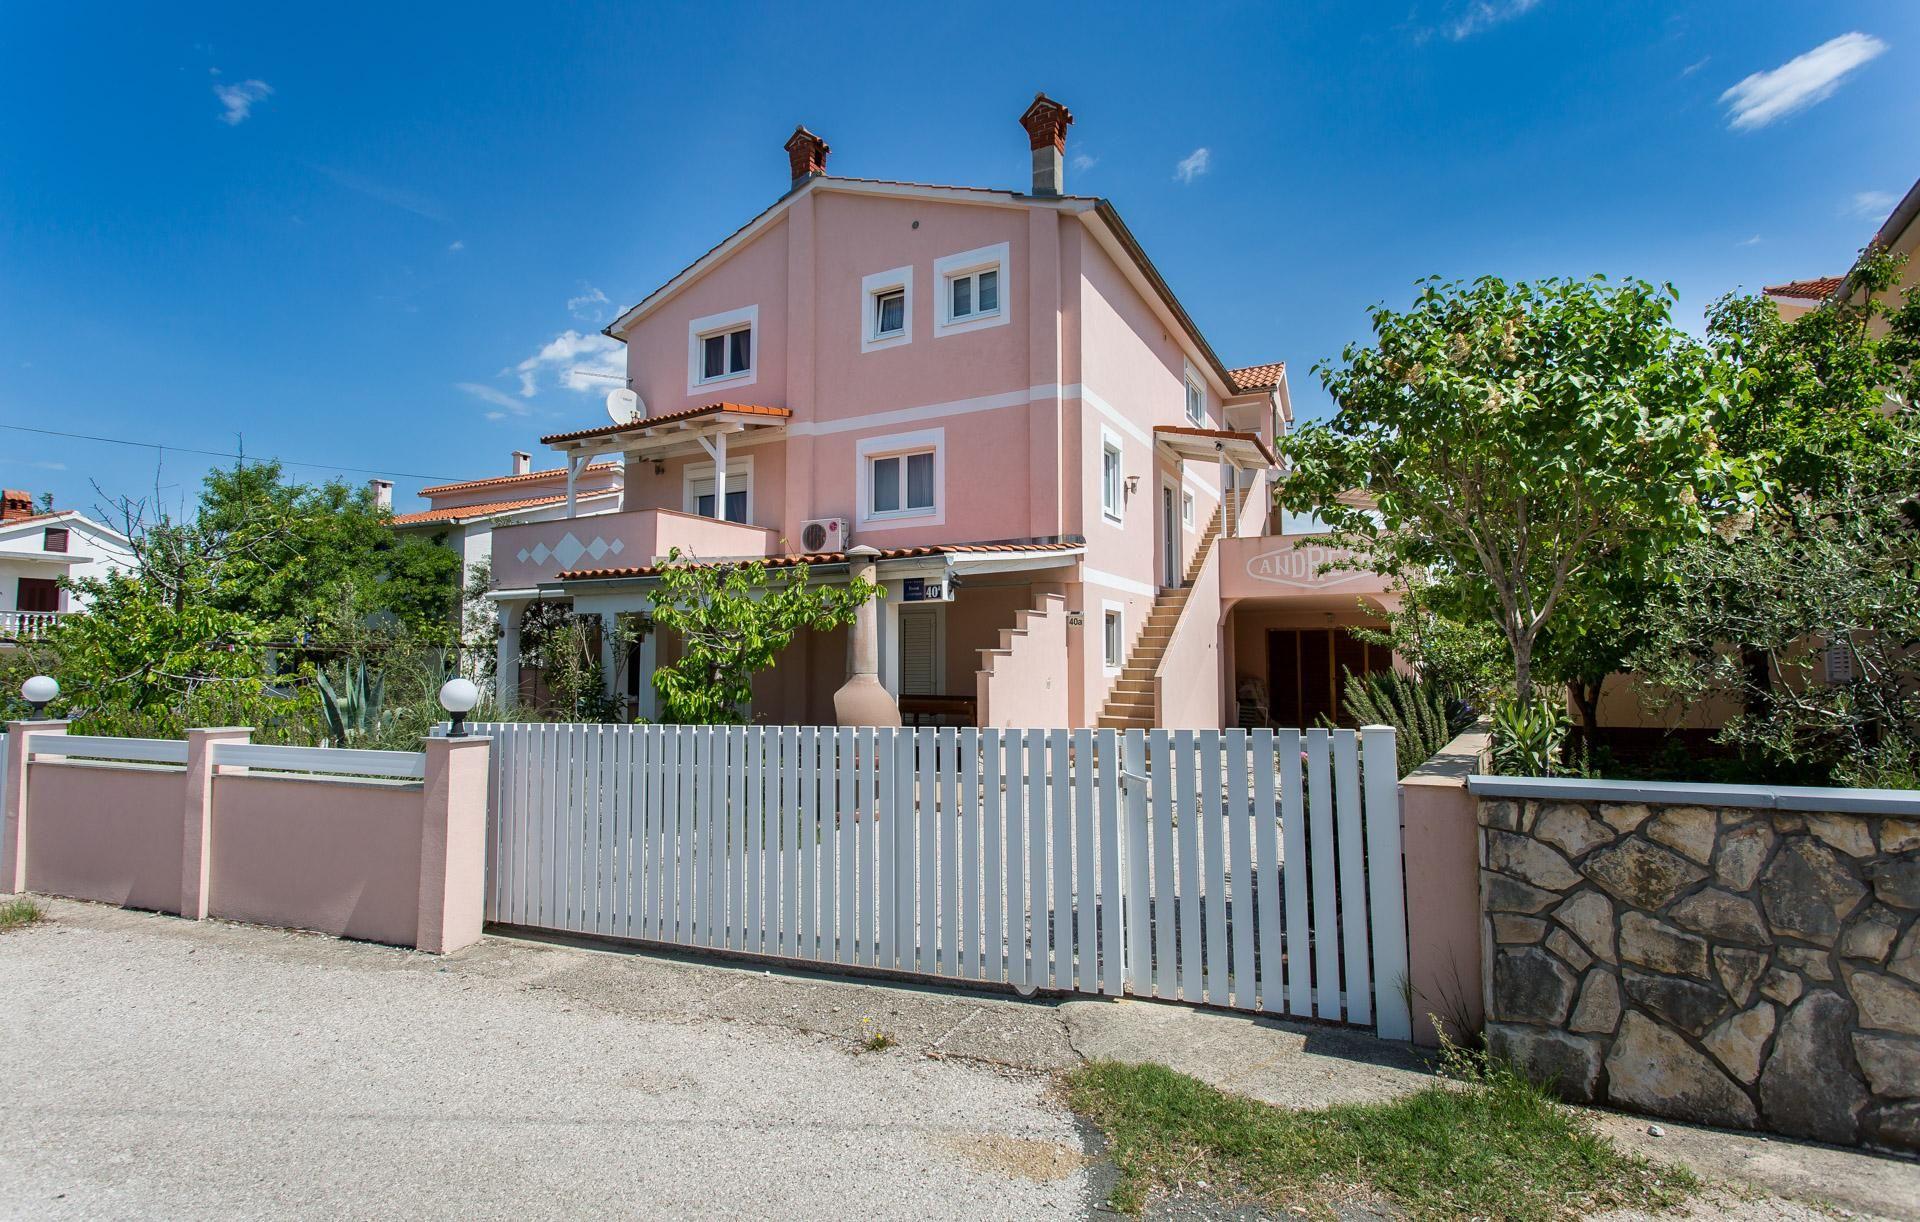 Ferienwohnung für 5 Personen ca. 100 m²  Ferienhaus in Kroatien